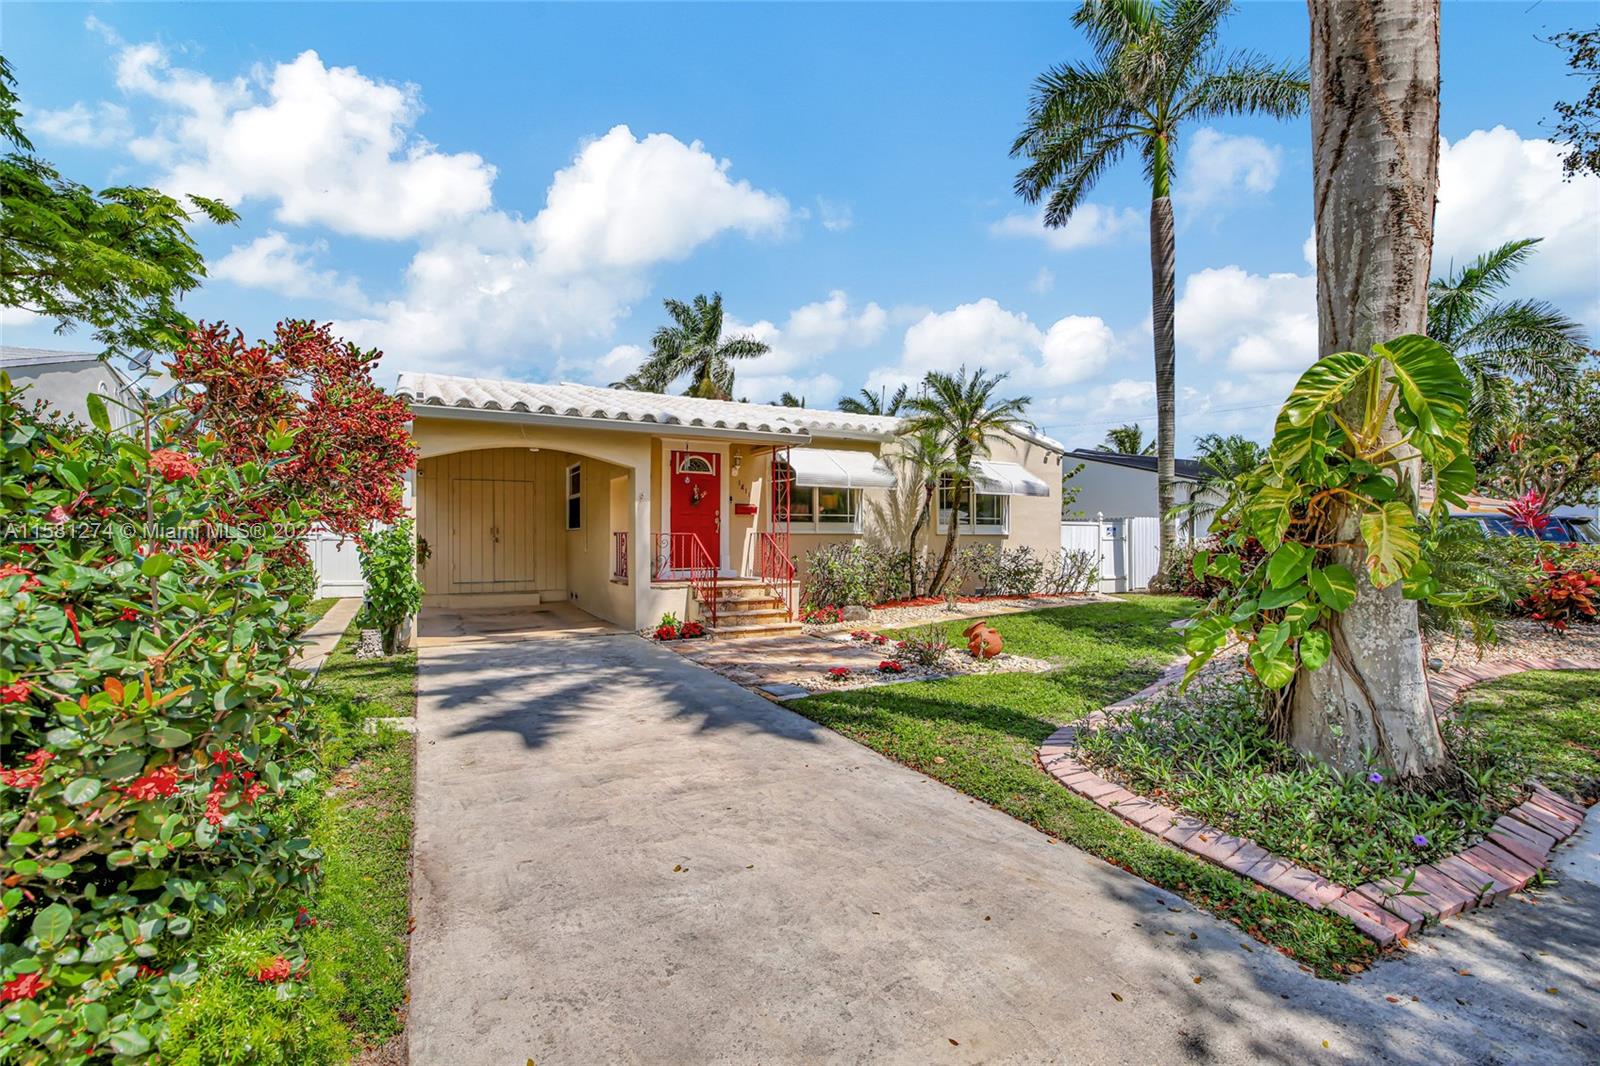 Rental Property at 141 Fletcher, Hollywood, Broward County, Florida -  - $699,900 MO.